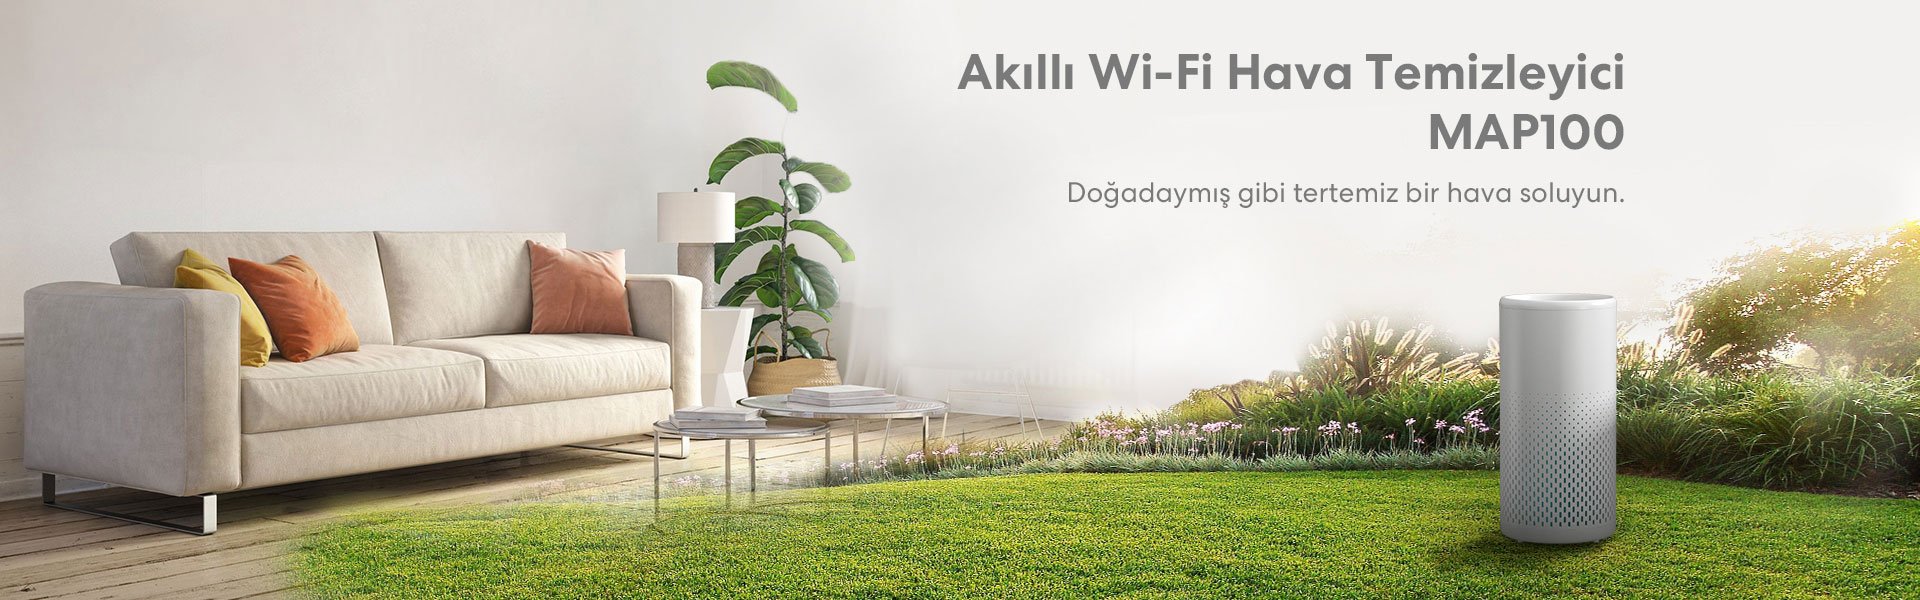 Meross Akıllı Wi-Fi Hava Temizleyici